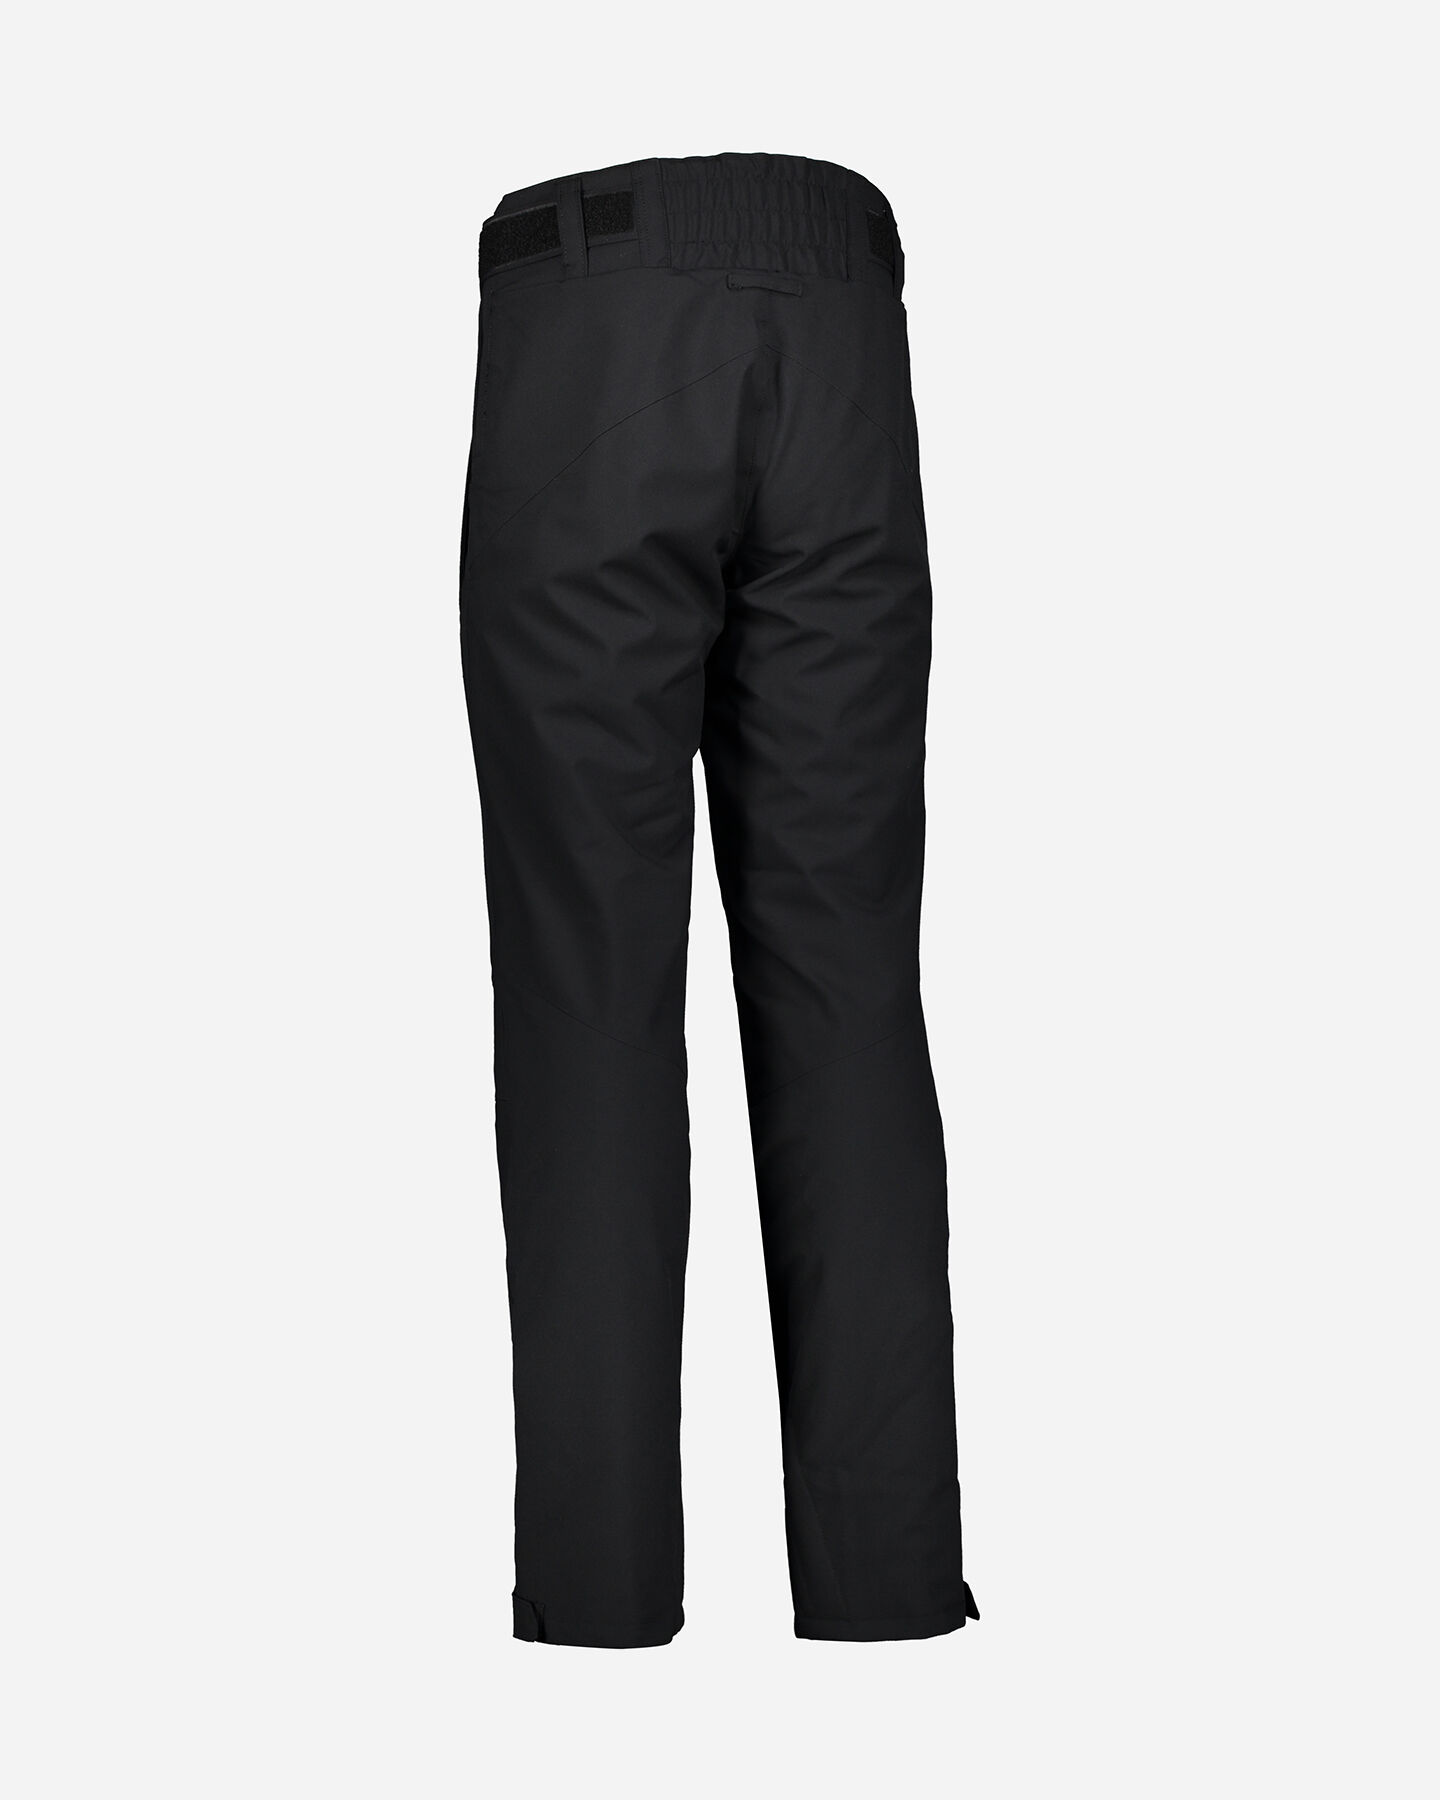  Pantalone sci PHENIX SHUTTLE M S4083905|FOR|XL scatto 2